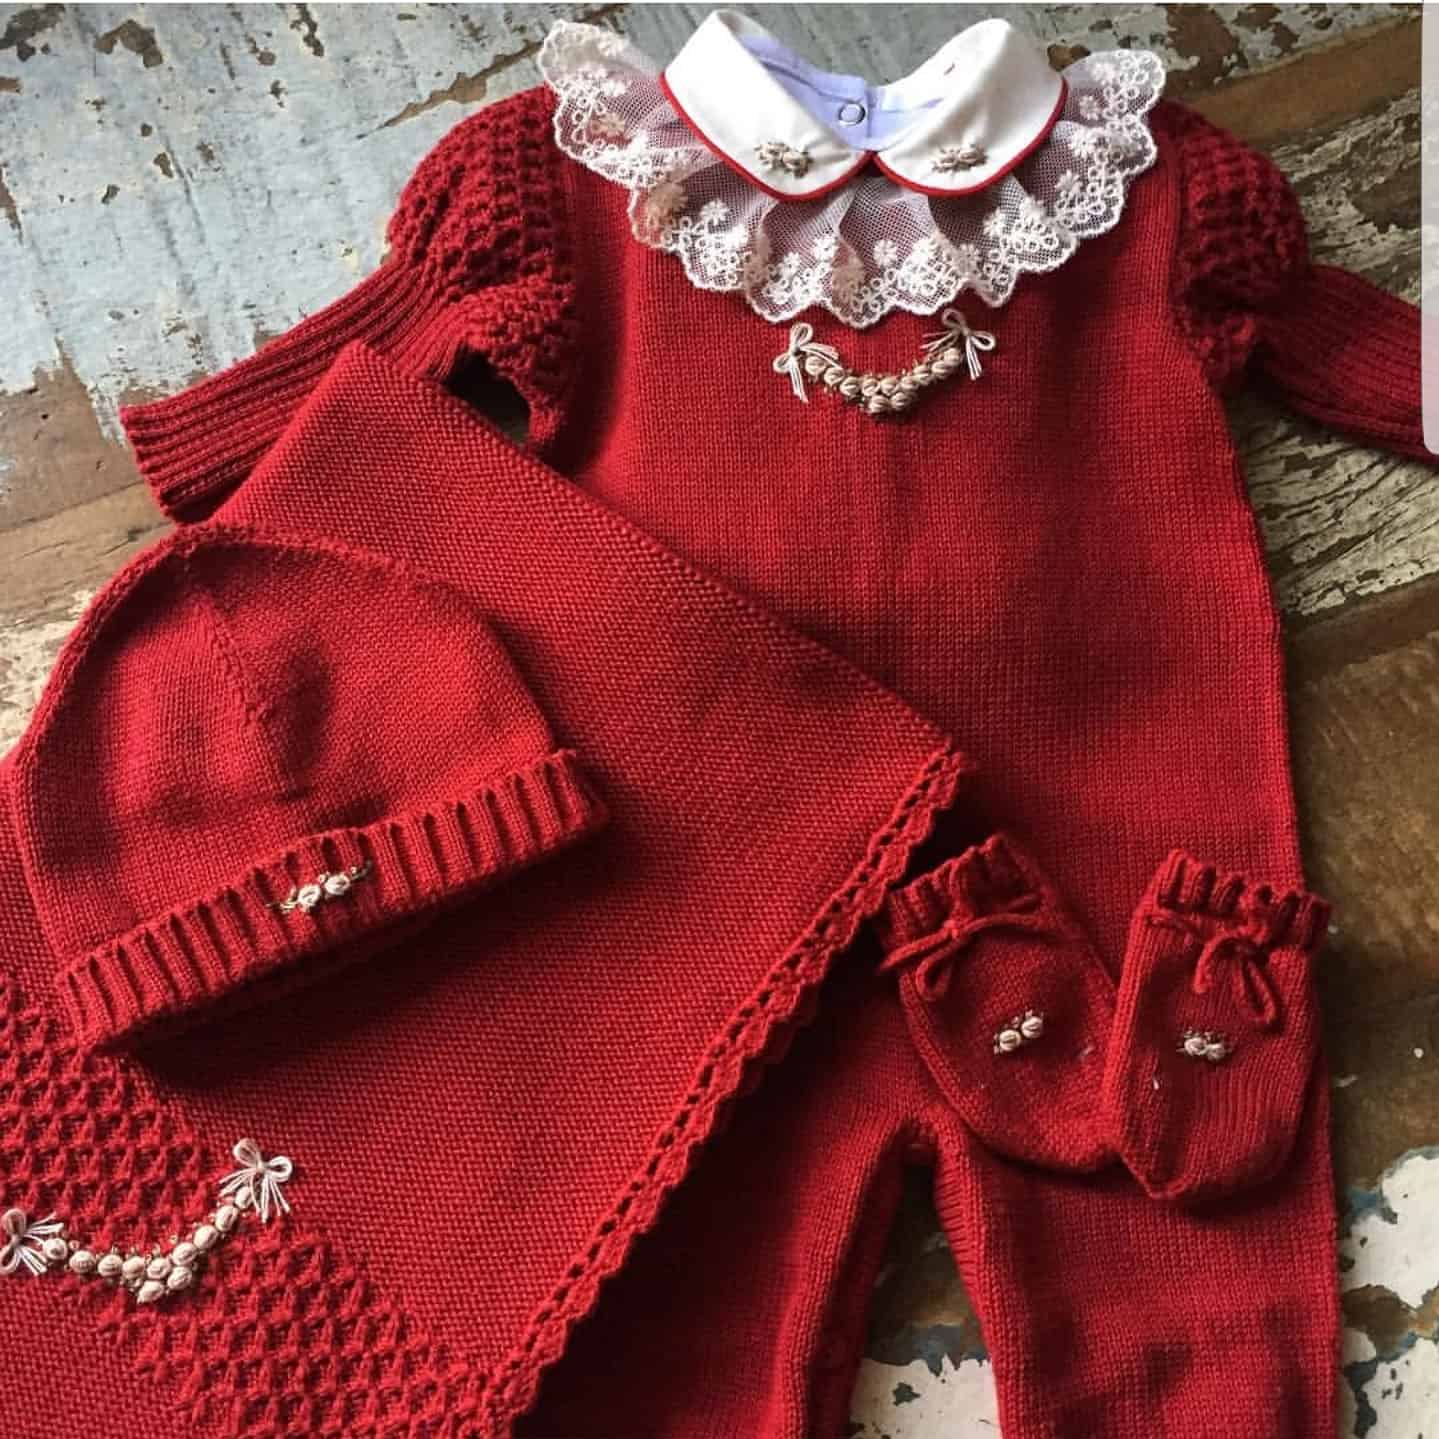 Saber como fazer sapatinho de crochê vermelho pode ajudar a compor a roupinha de saída da maternidade.